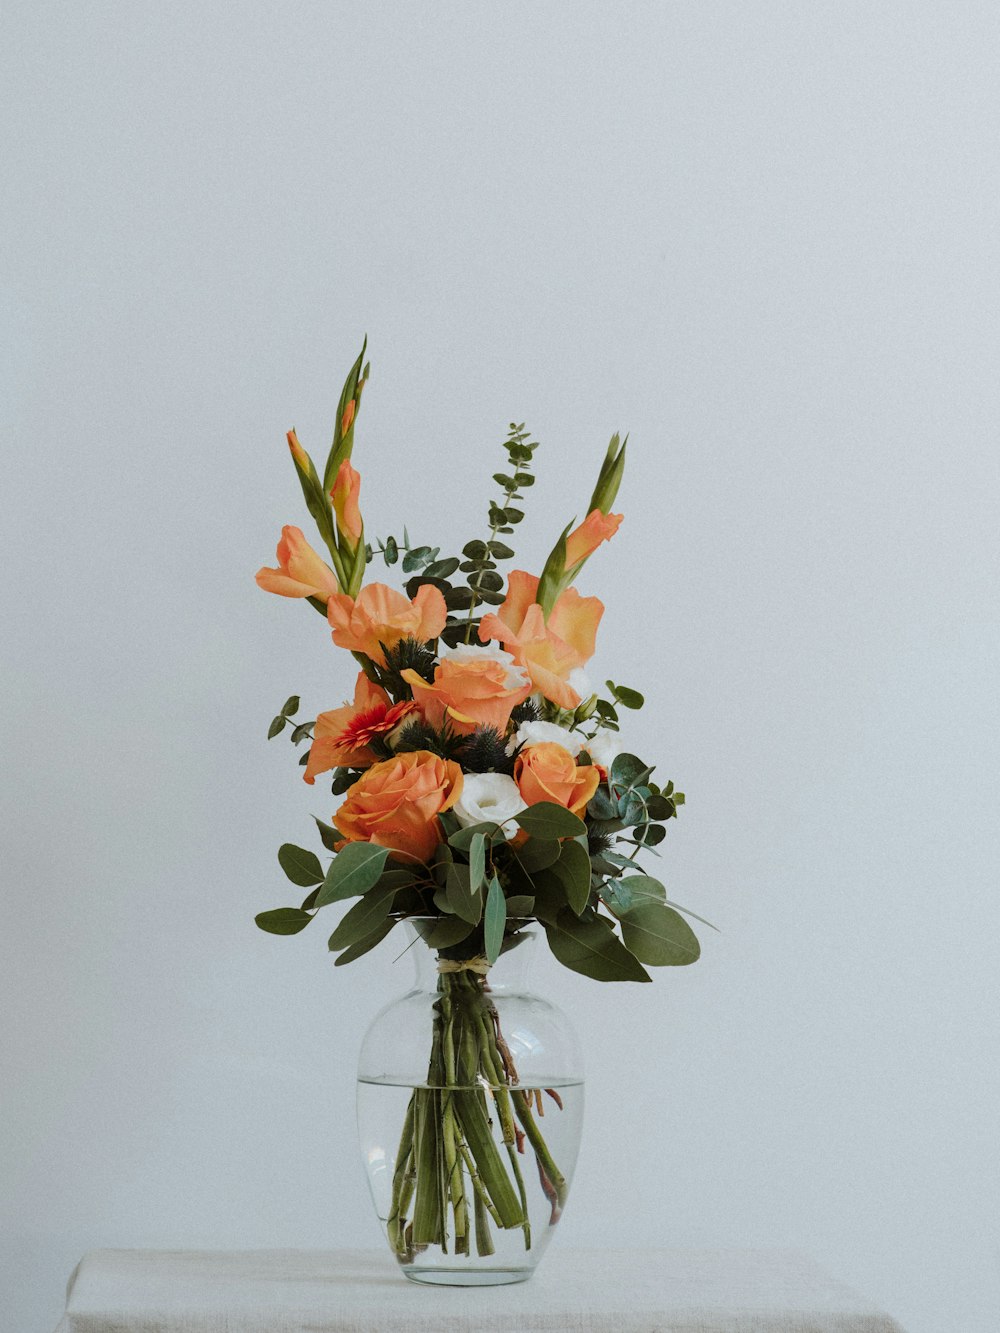 透明なガラスの花瓶に入ったオレンジ色の花